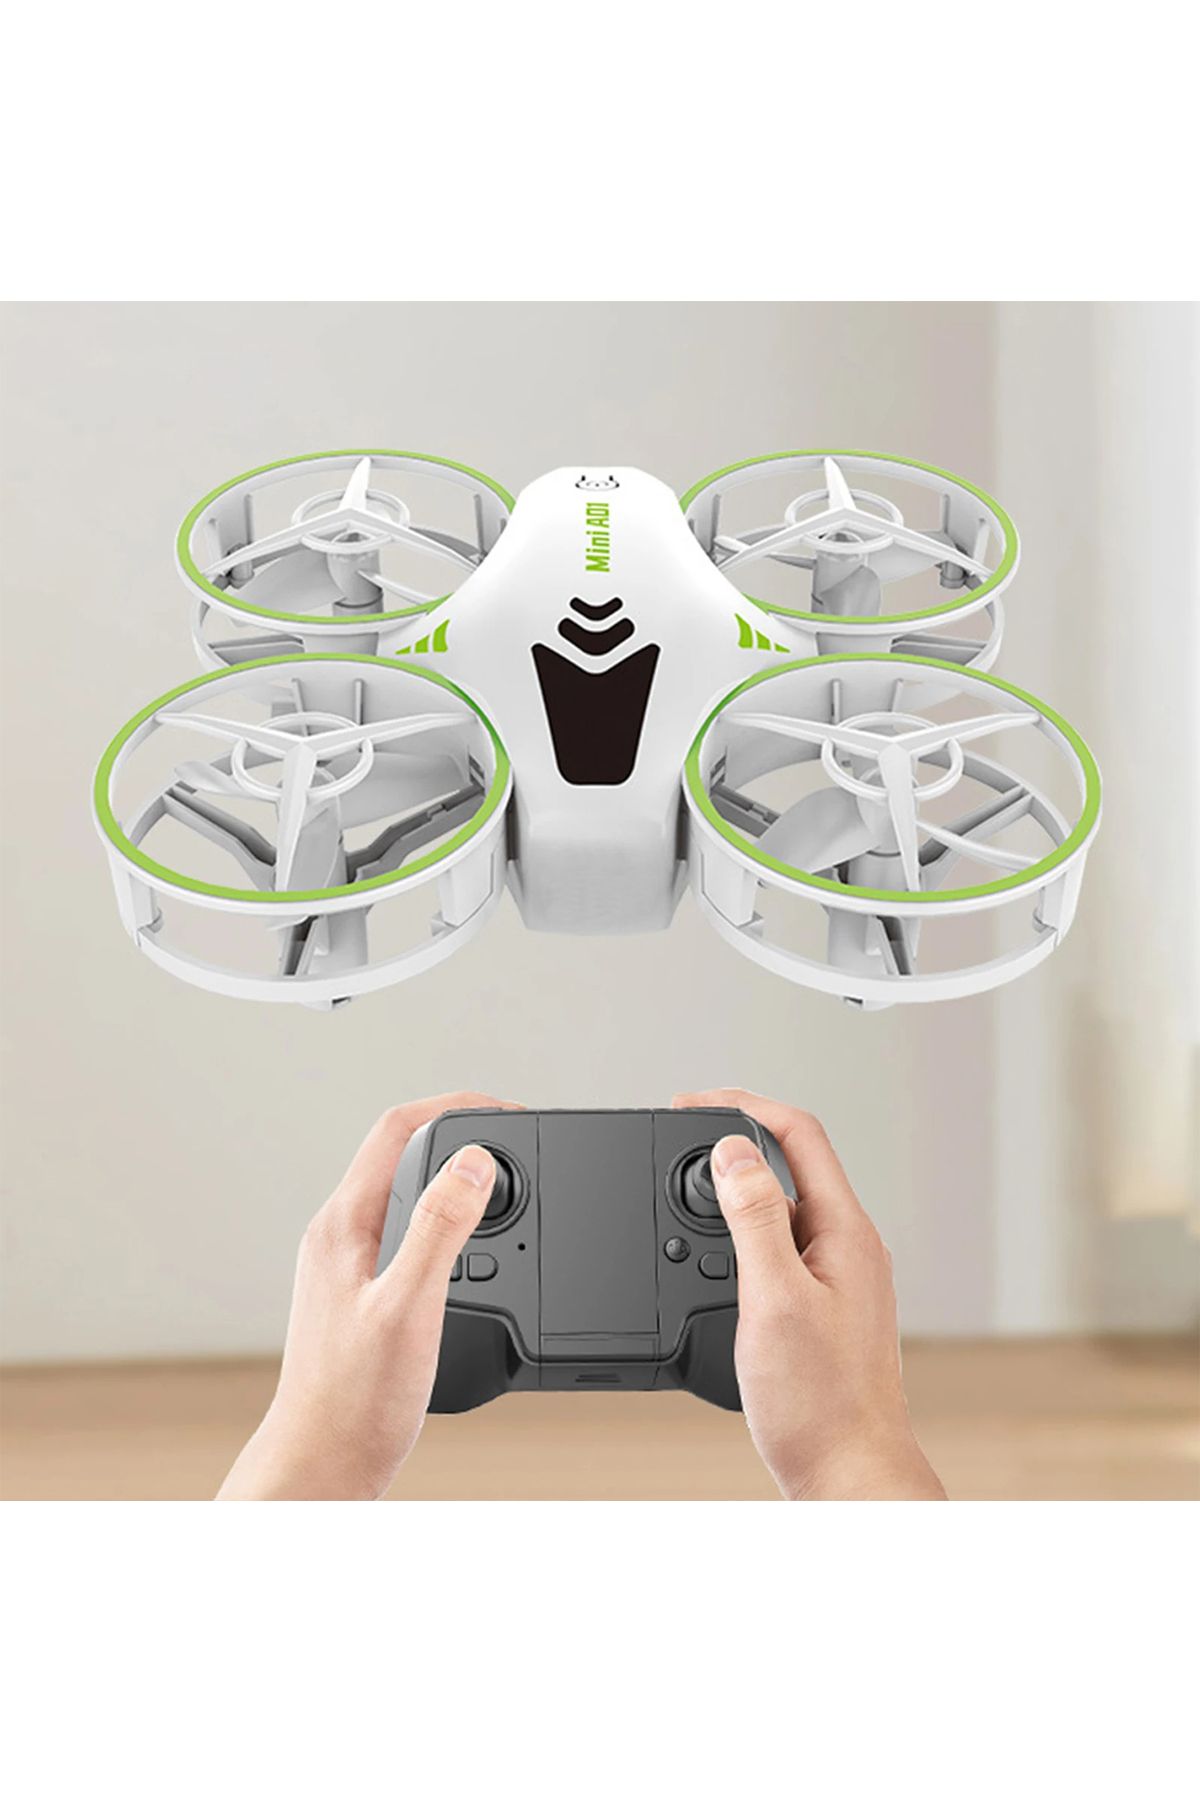 oyuncakgidiyor Havada Stabil Kalabilen Akrobat Mini Drone 360° Mini Kamerasız Drone Quadcopter 2.4Ghz